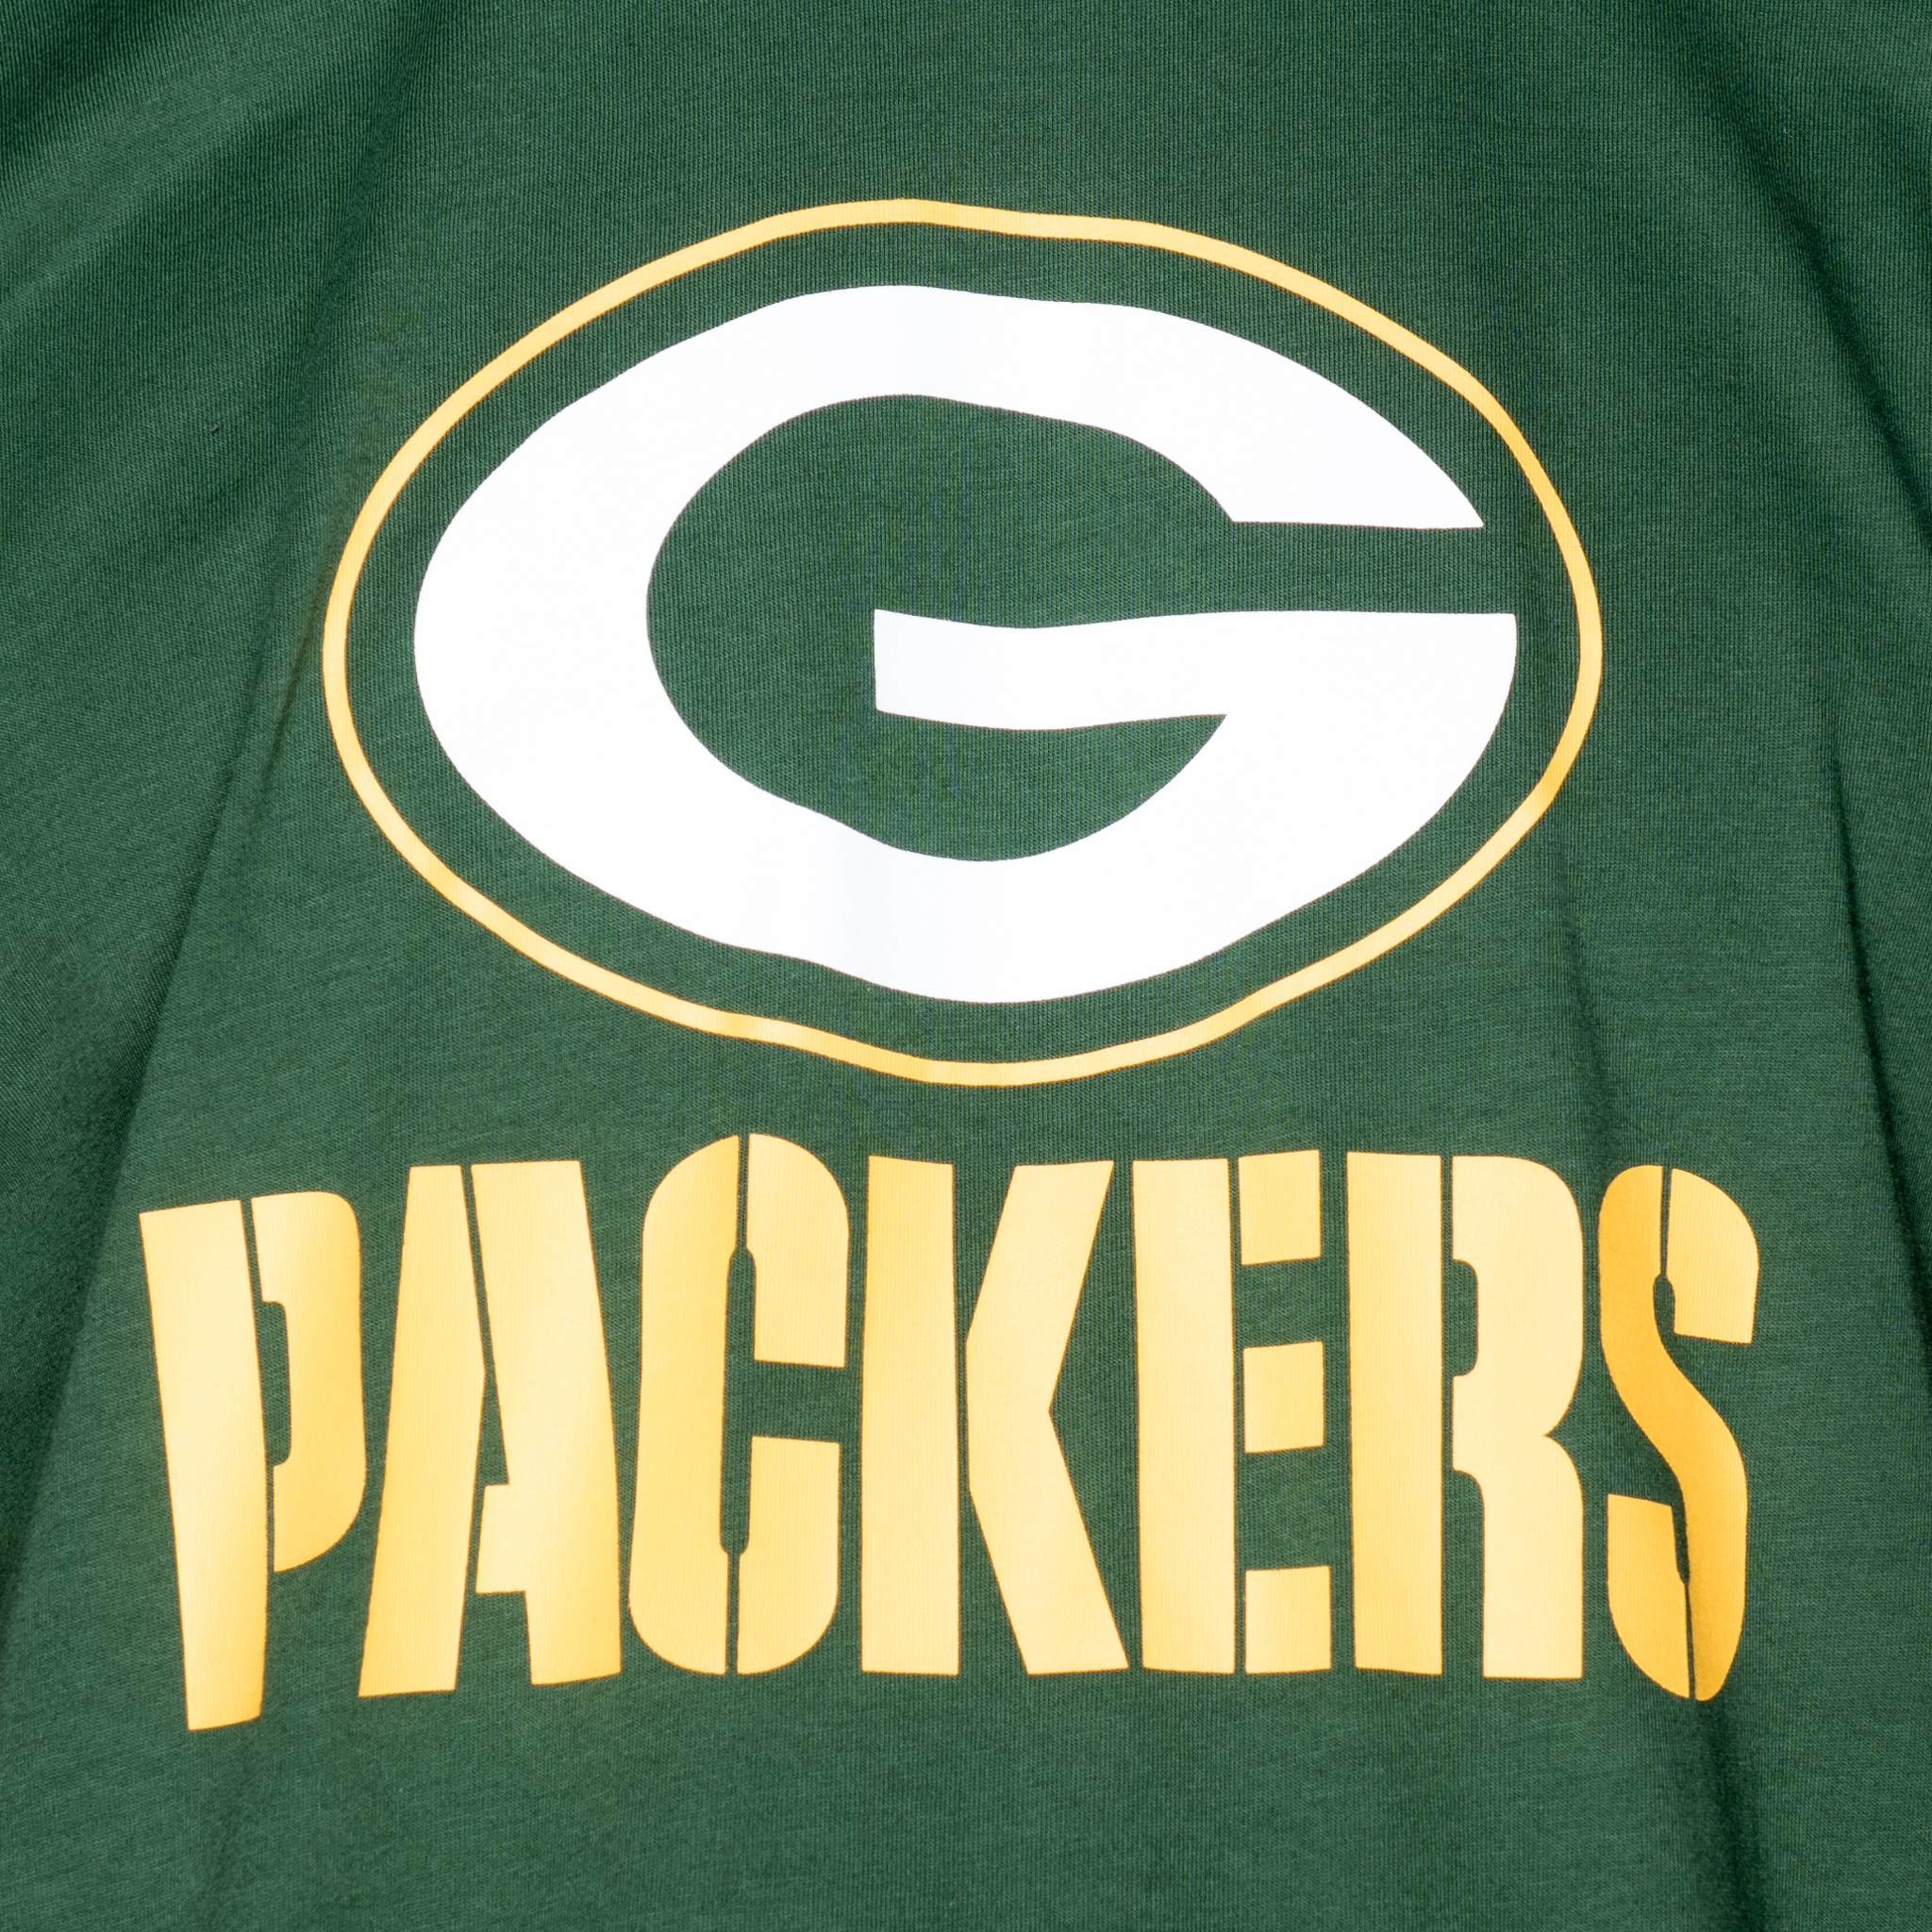 T-shirt vert avec logo des Green Bay Packers